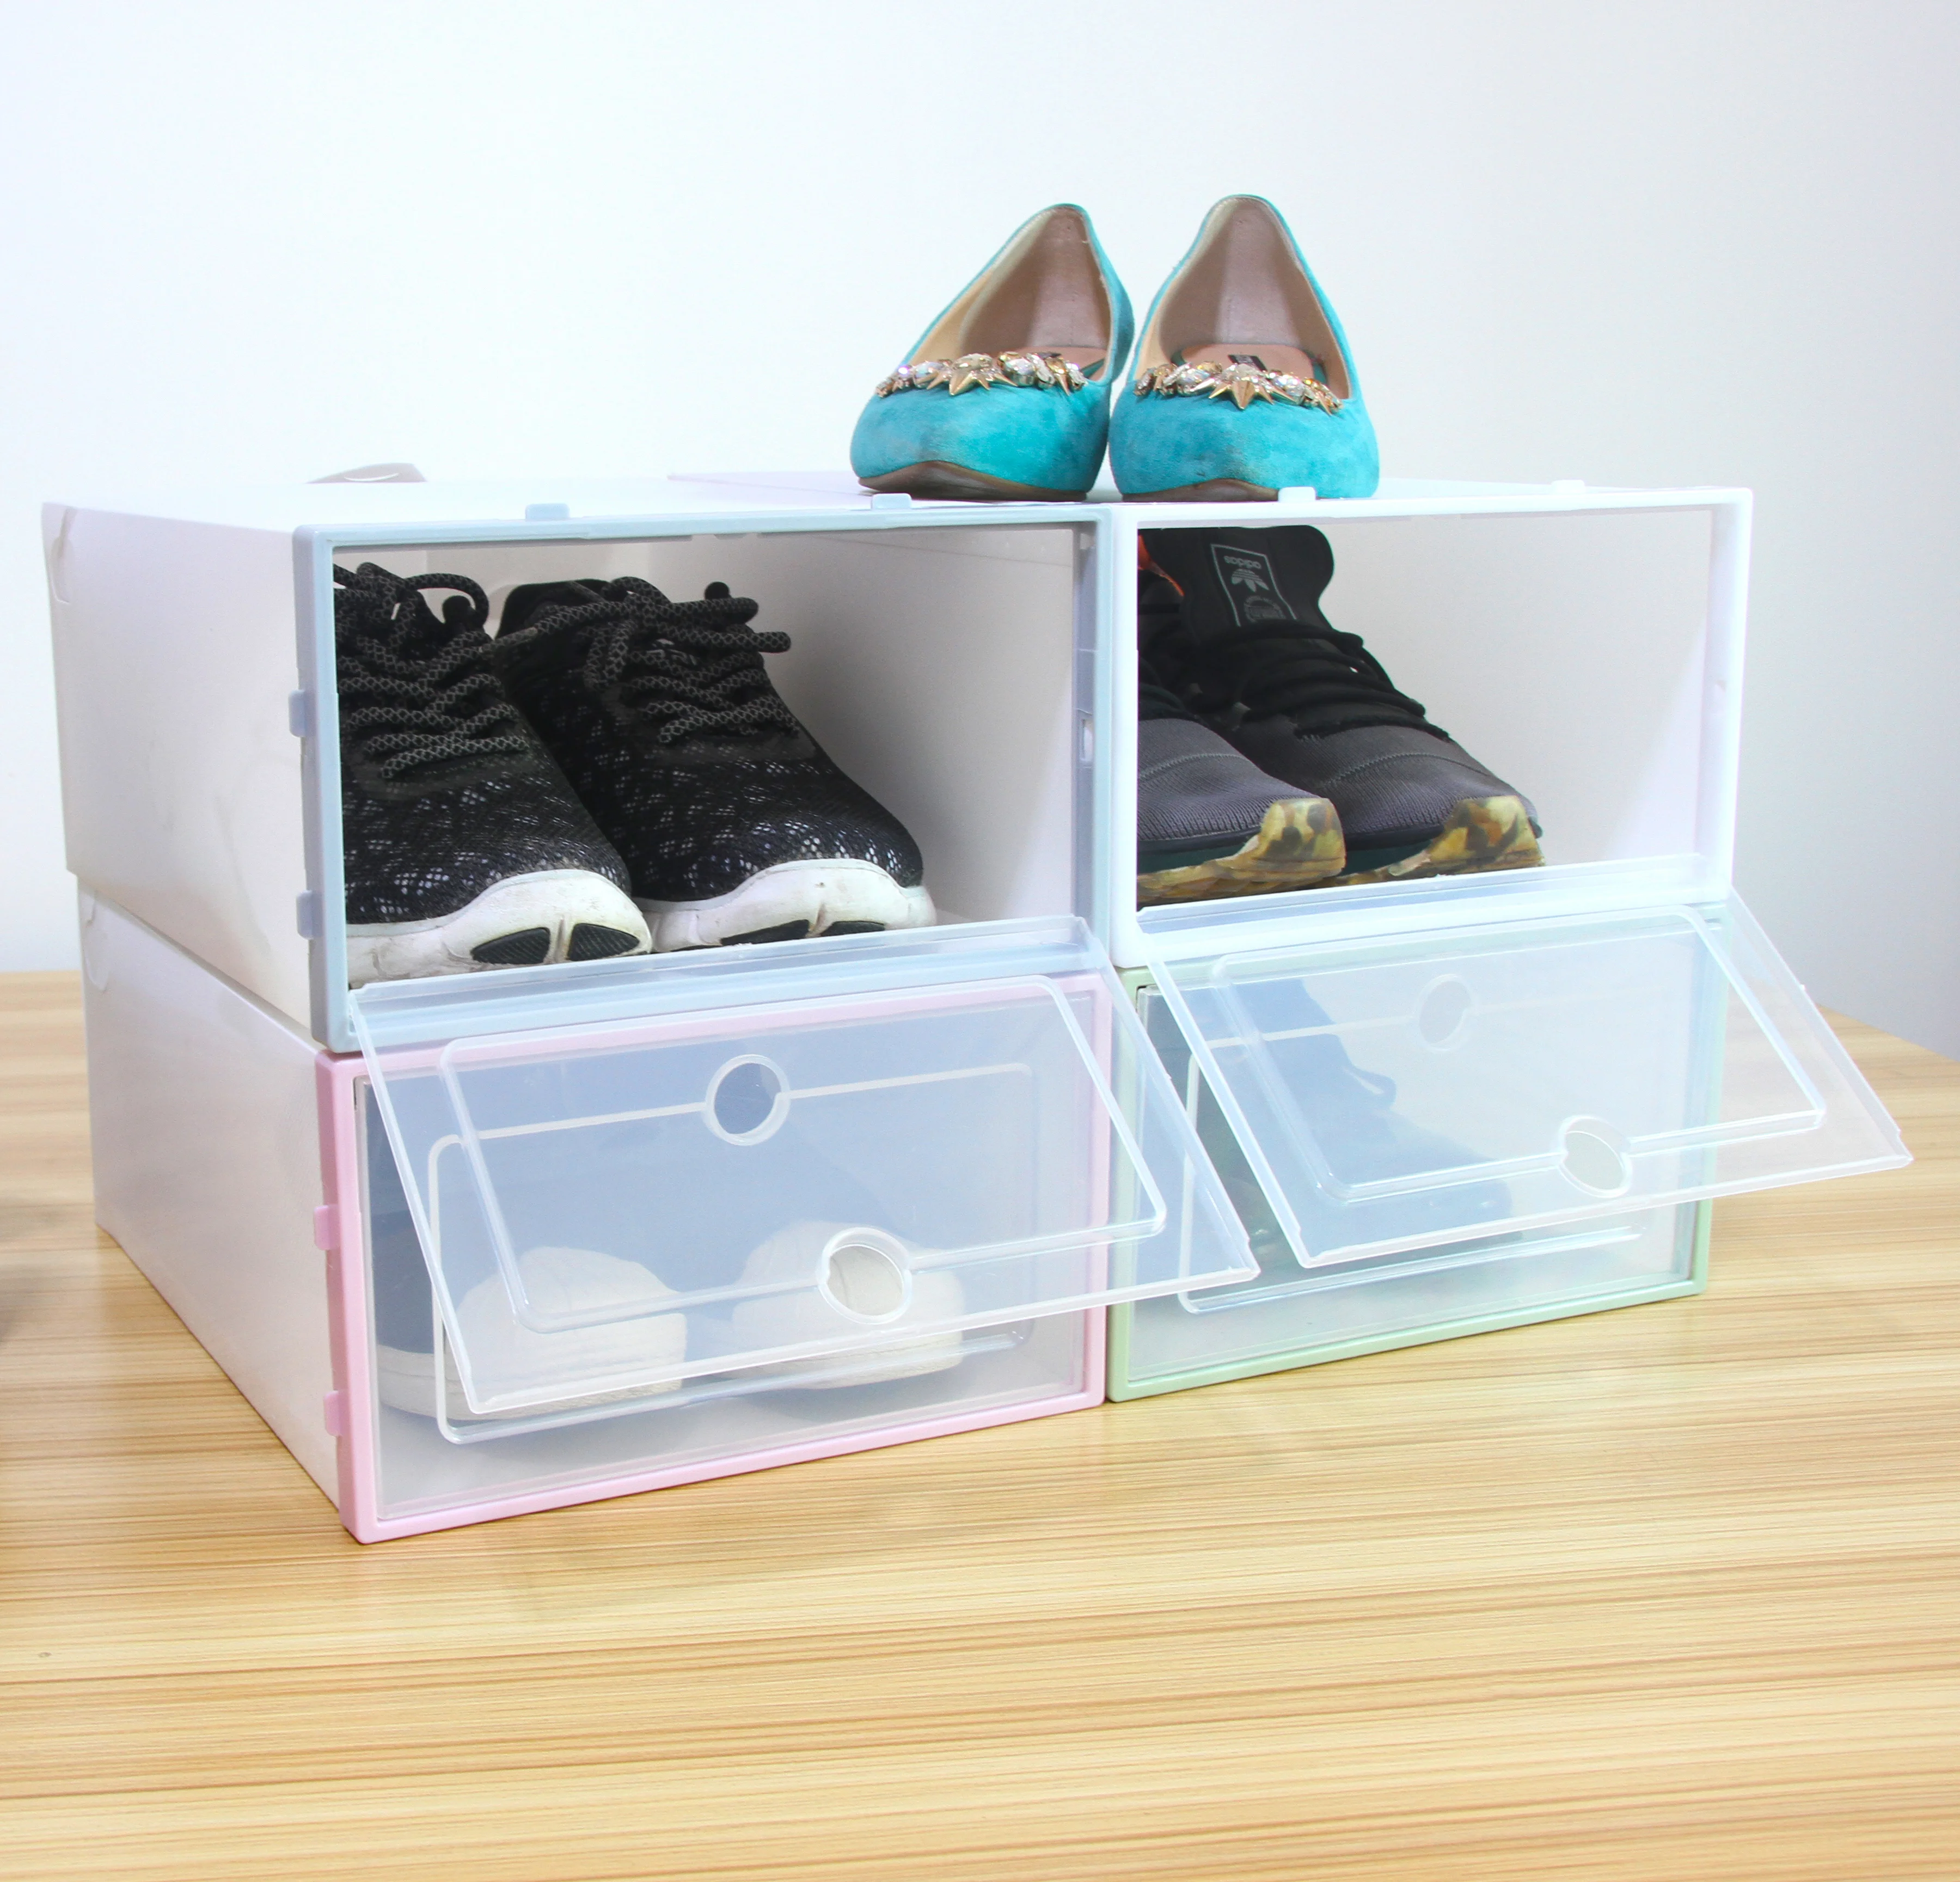 BoYaLiGe Personnalisé pliable de luxe transparent boîte à chaussures en plastique empilable goutte avant stockage clair boîte à chaussures pliable